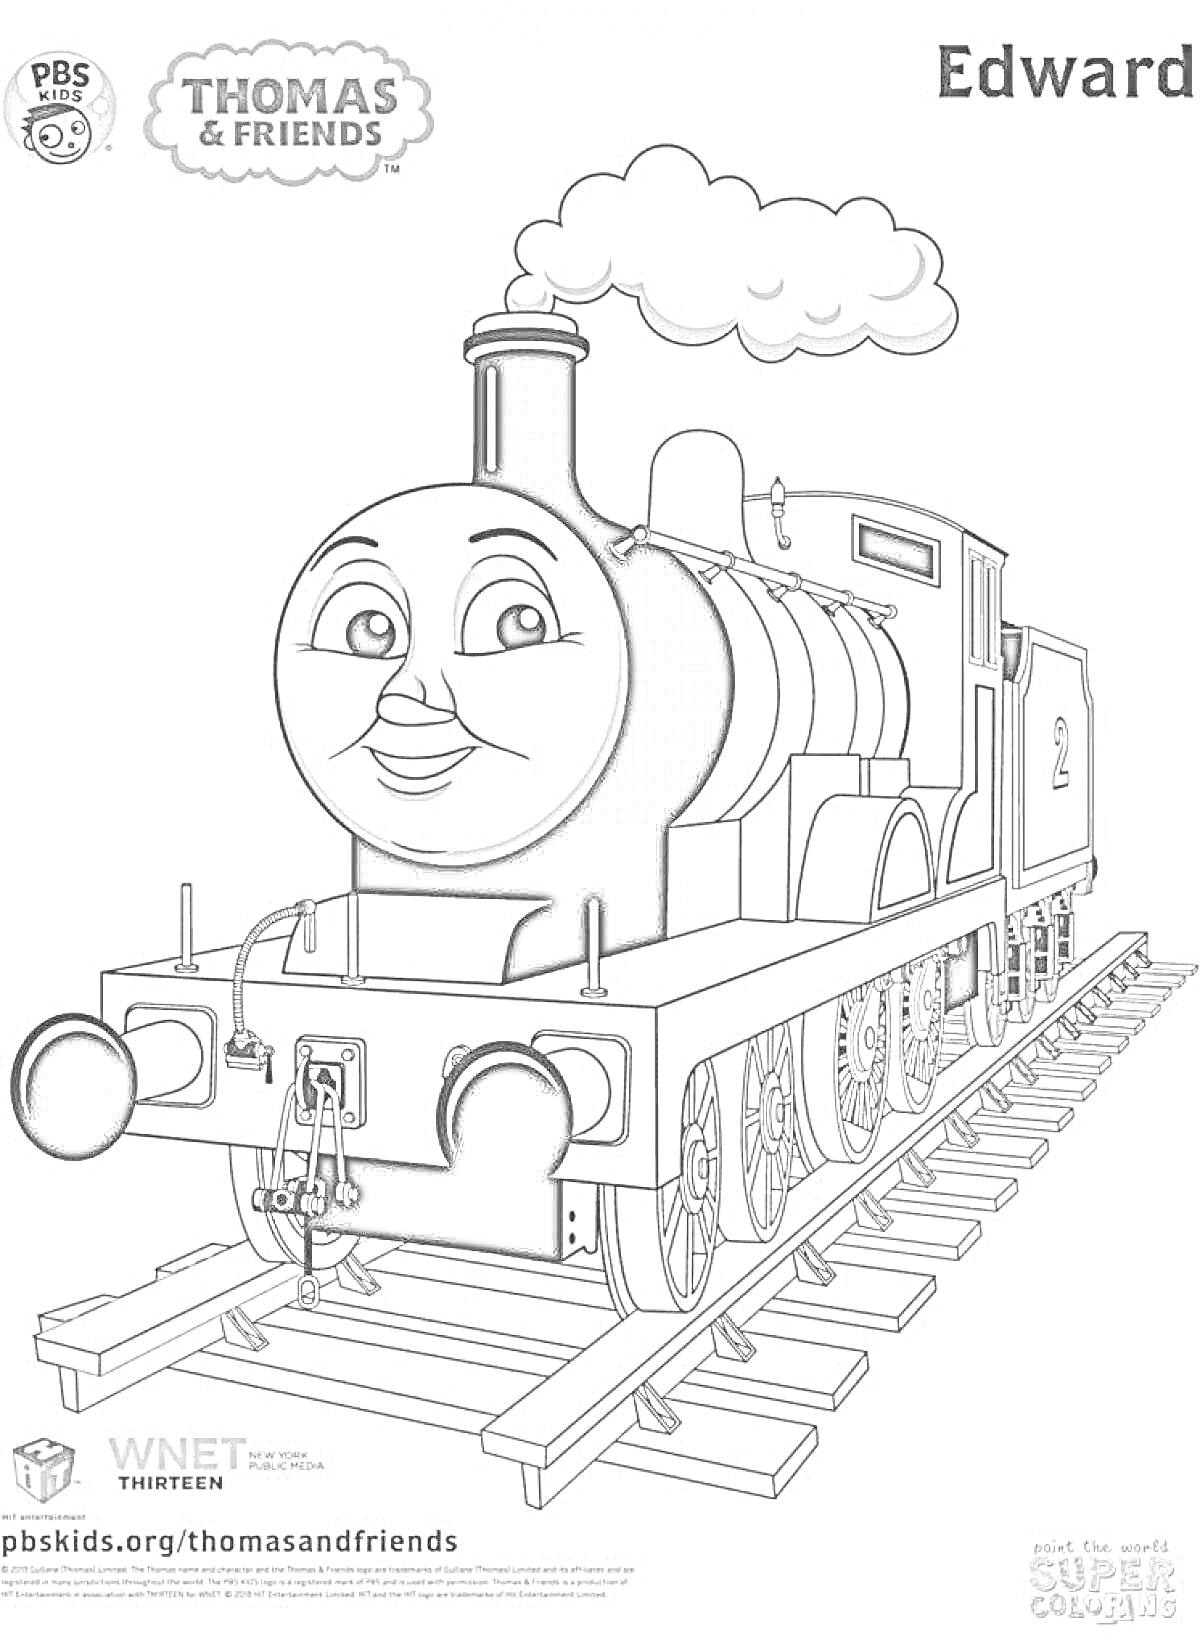 Раскраска Раскраска с поездом Эдвардом, паровоз, рельсы, логотип PBS Kids, URL